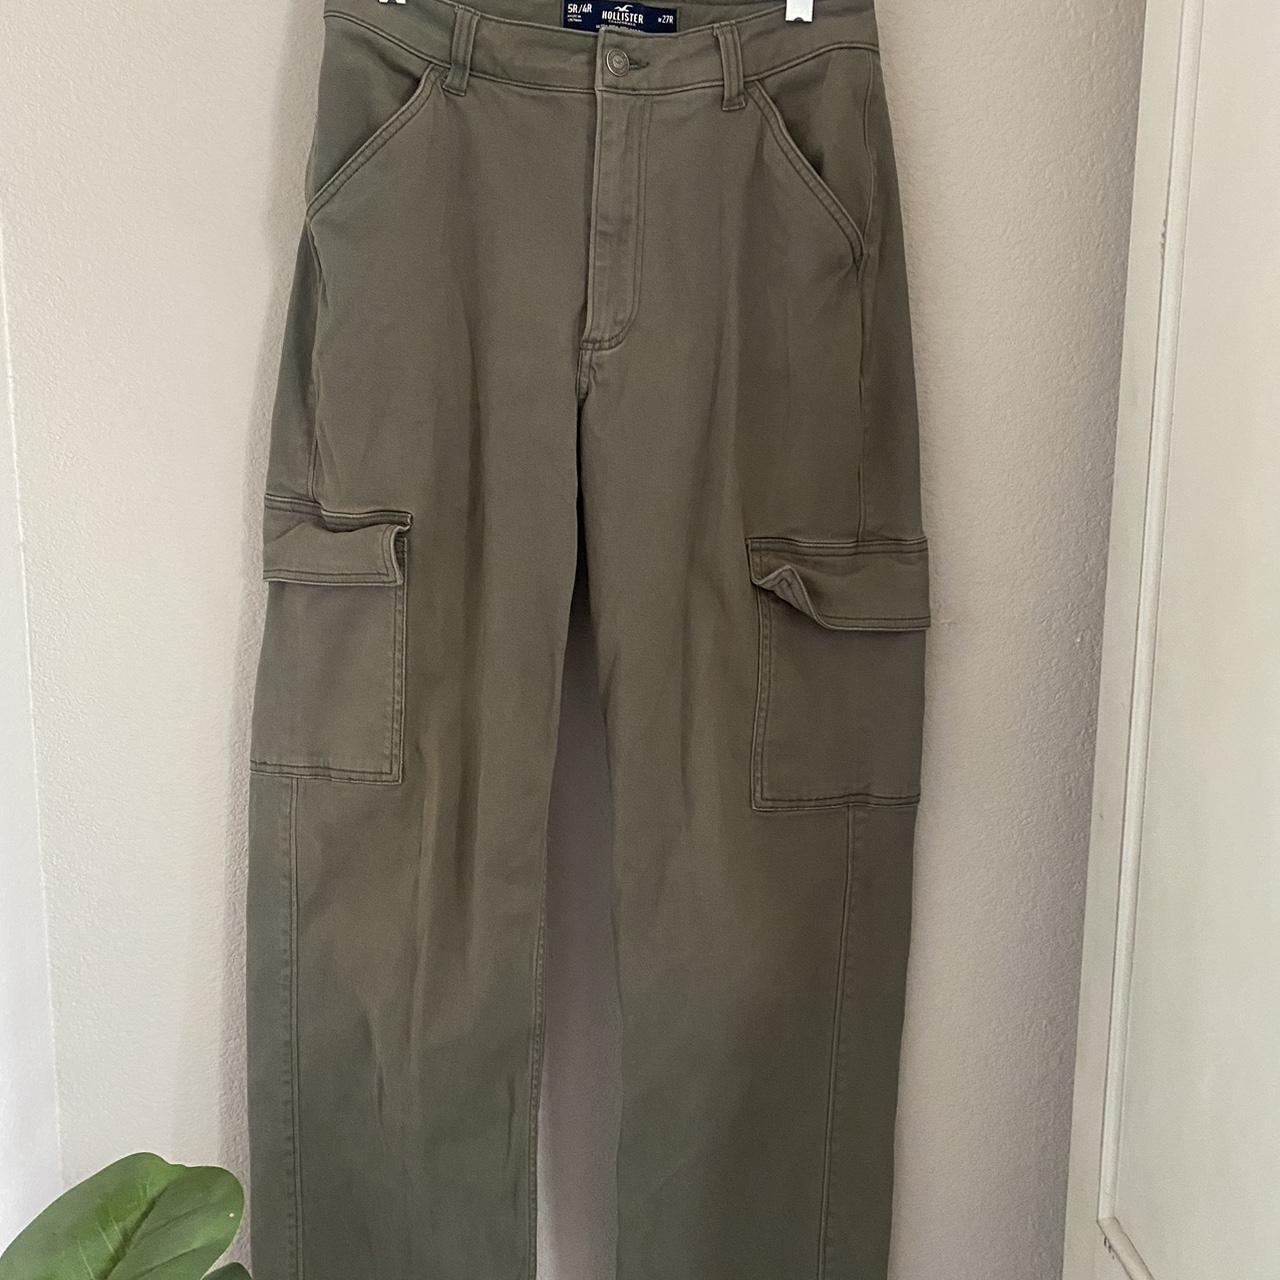 green hollister cargo pants no flaws - Depop